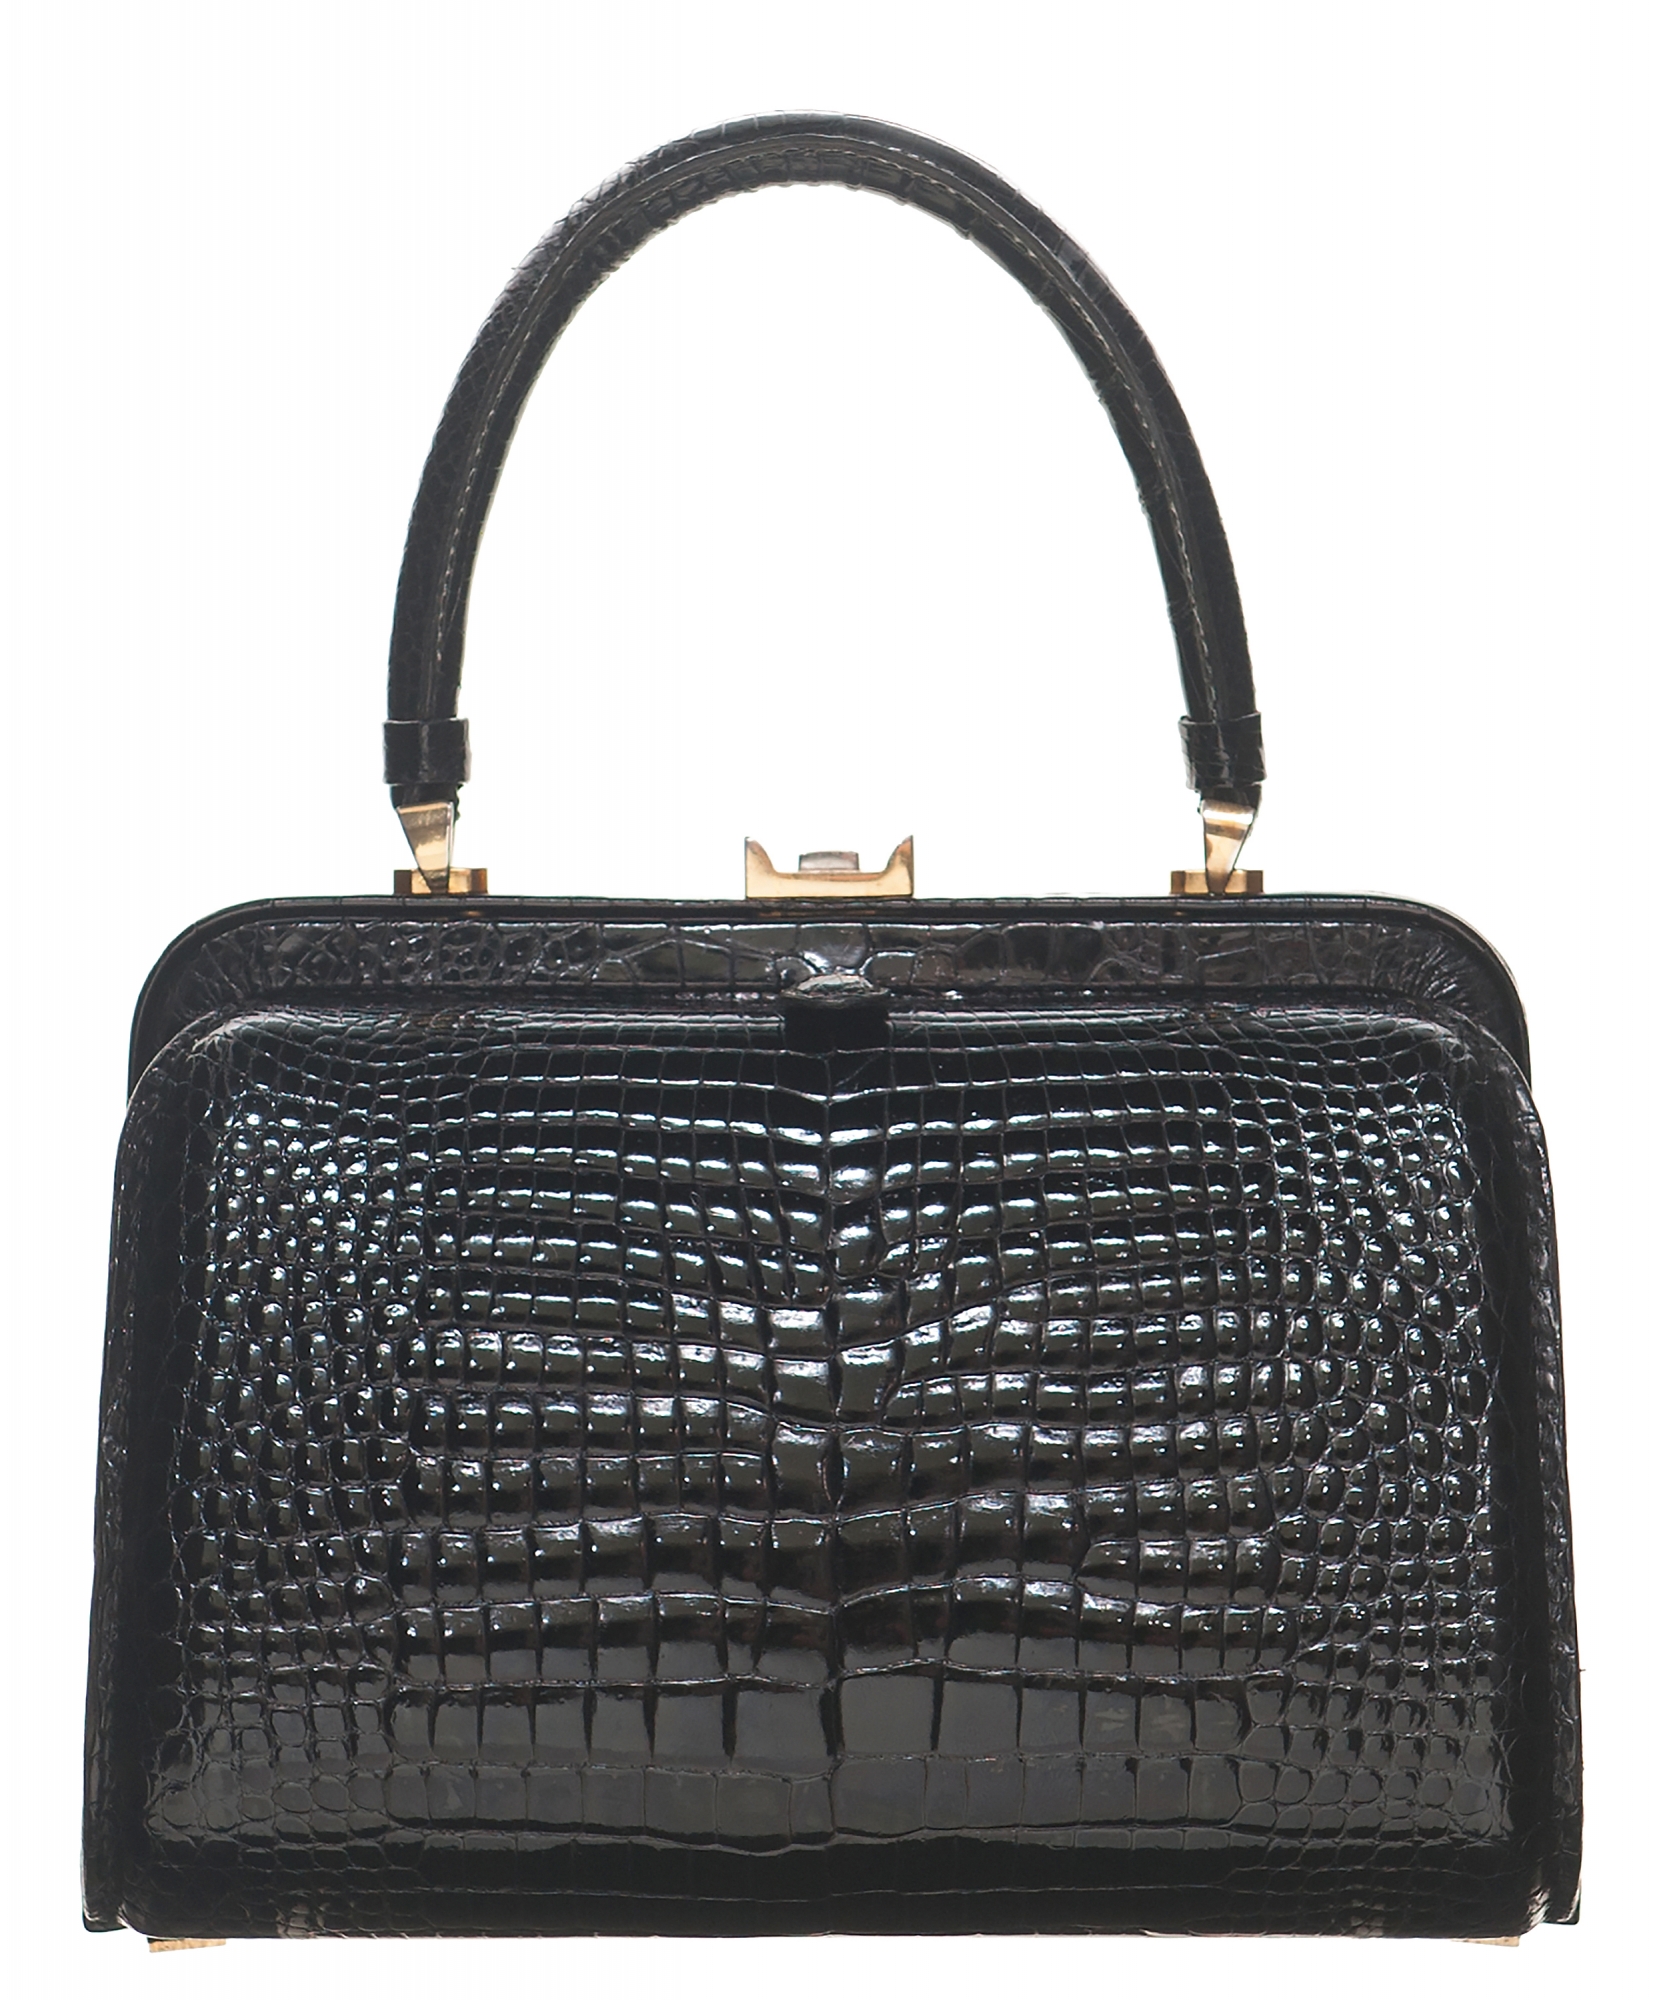 Fendi Black Crocodile Shoulder Bag 1970s Vintage